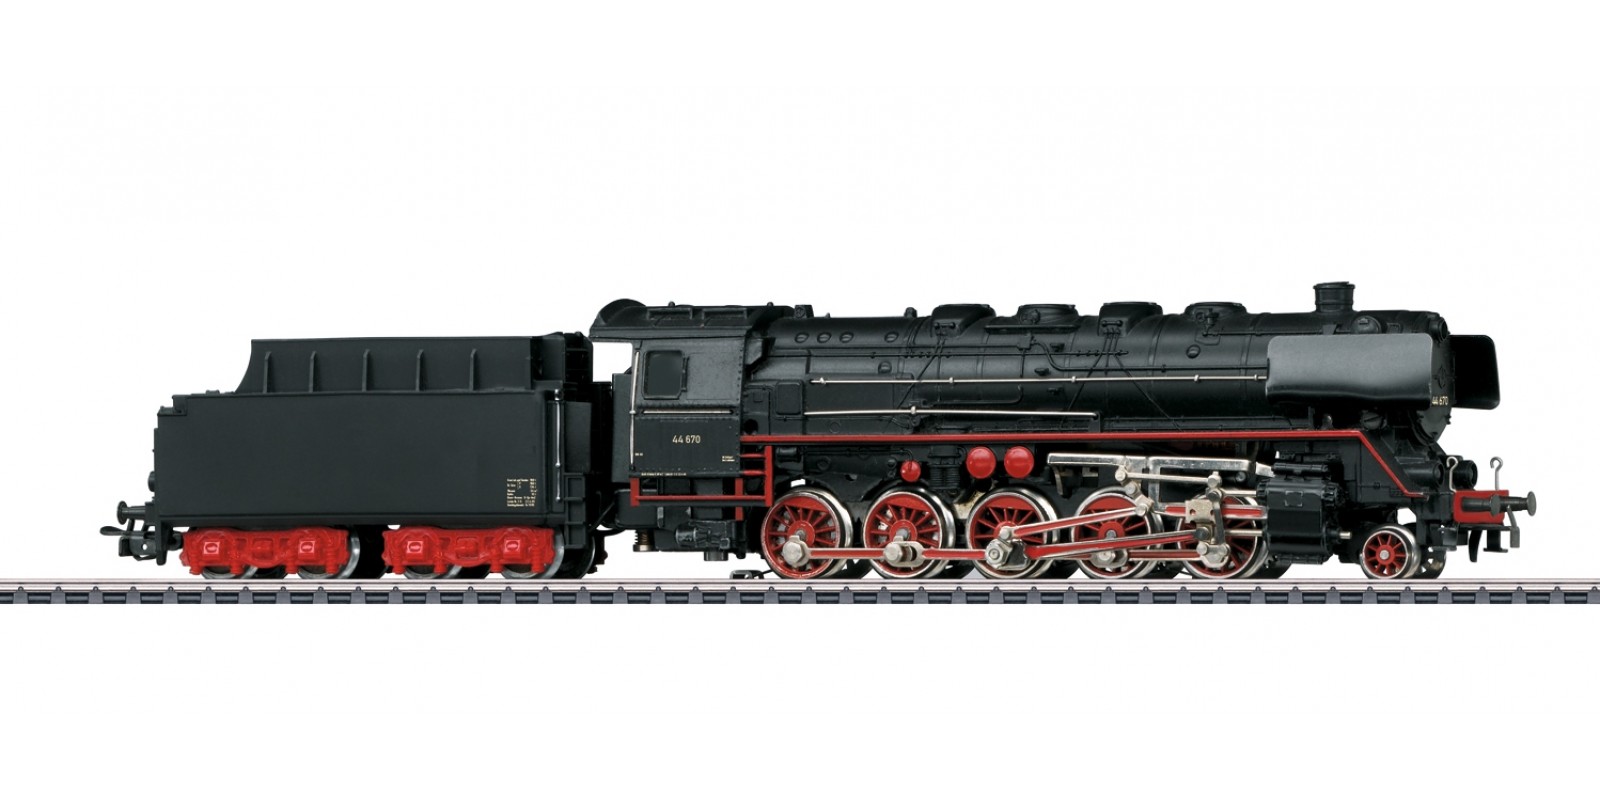 030470_01 German Federal Railroad (DB) class 44